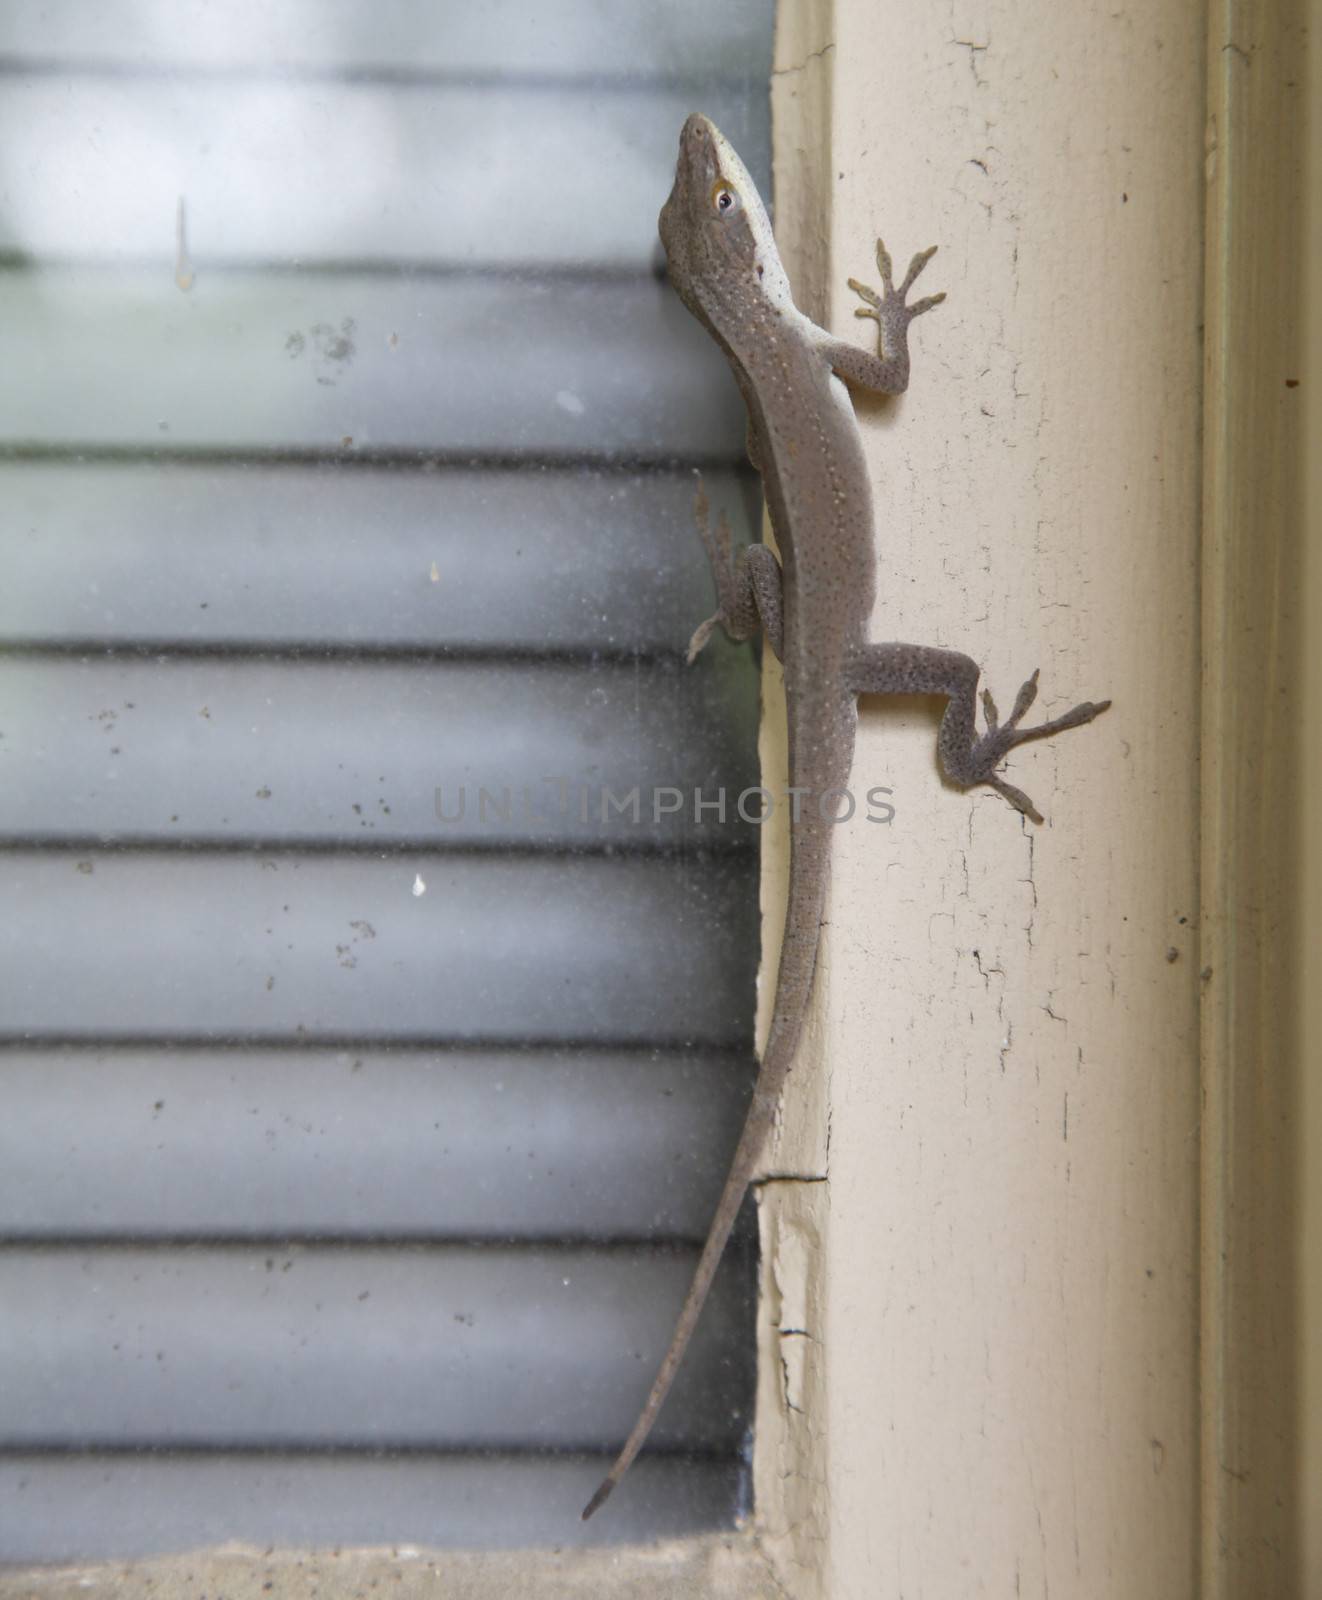 Brown anole lizard climbing window frame